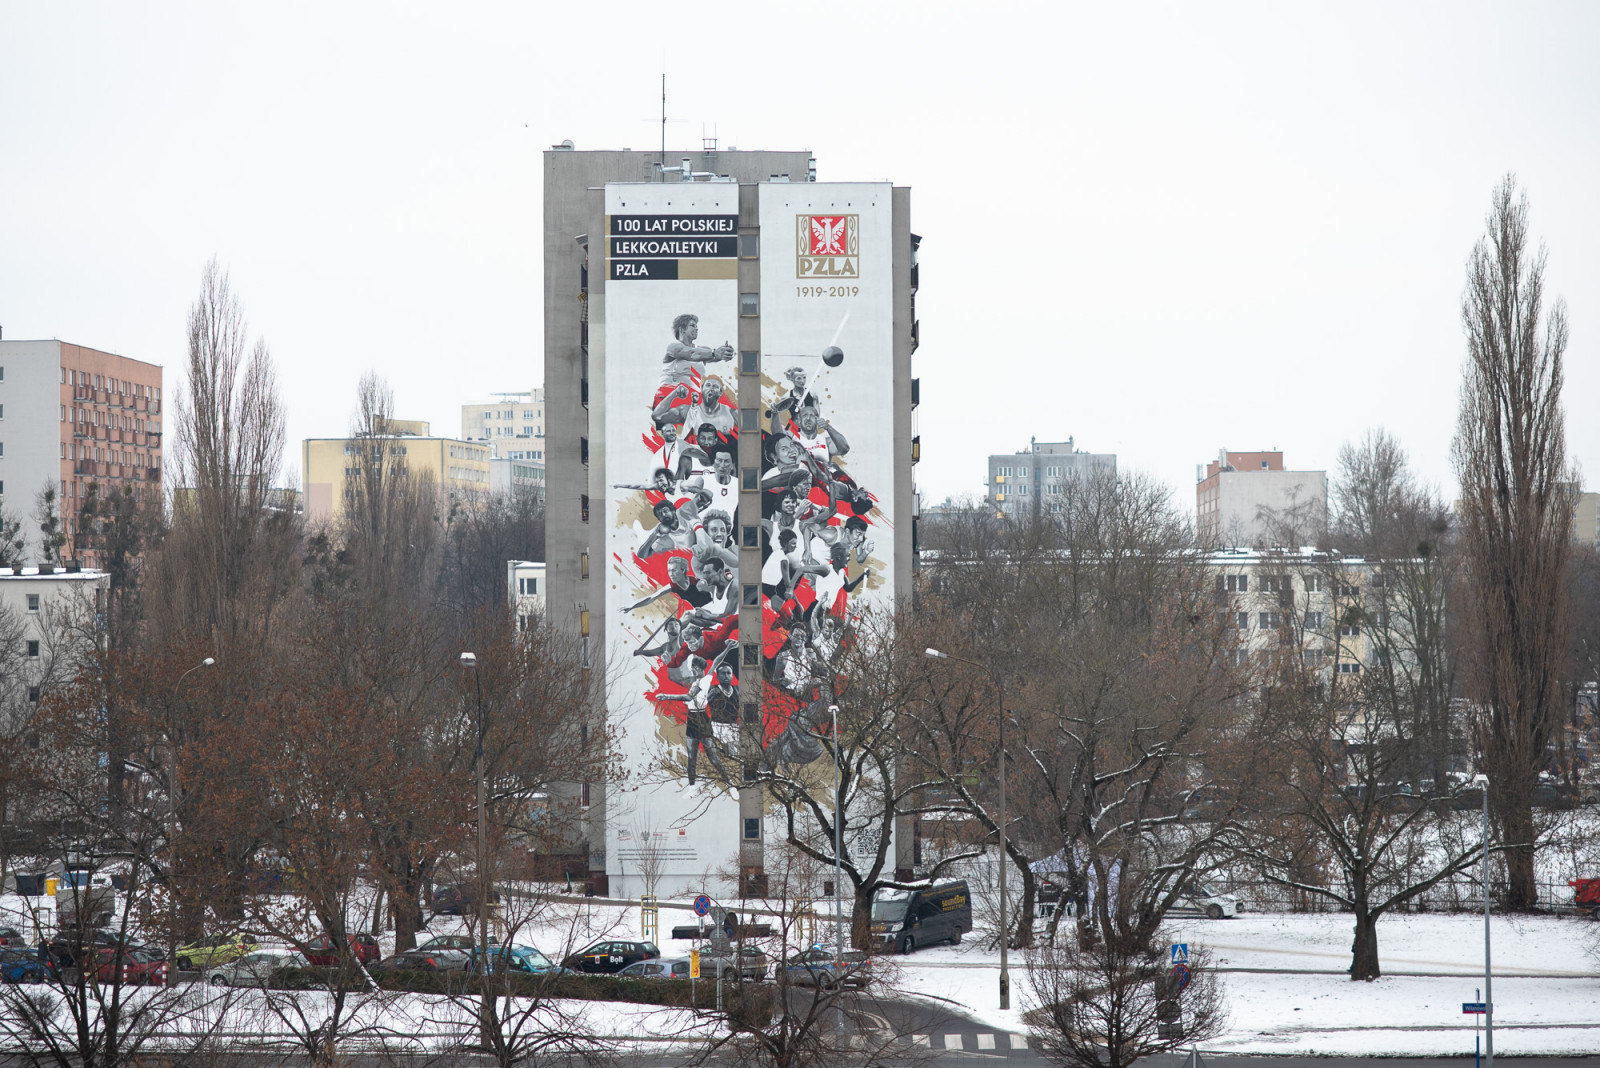 fotorelacja z odsłonięcia muralu, osoby wypowiadające się do mikrofonu, mural przedstawia ilustrację polskich sportowców i napis: 100 lat polskiej lekkoatletyki 1919-2019